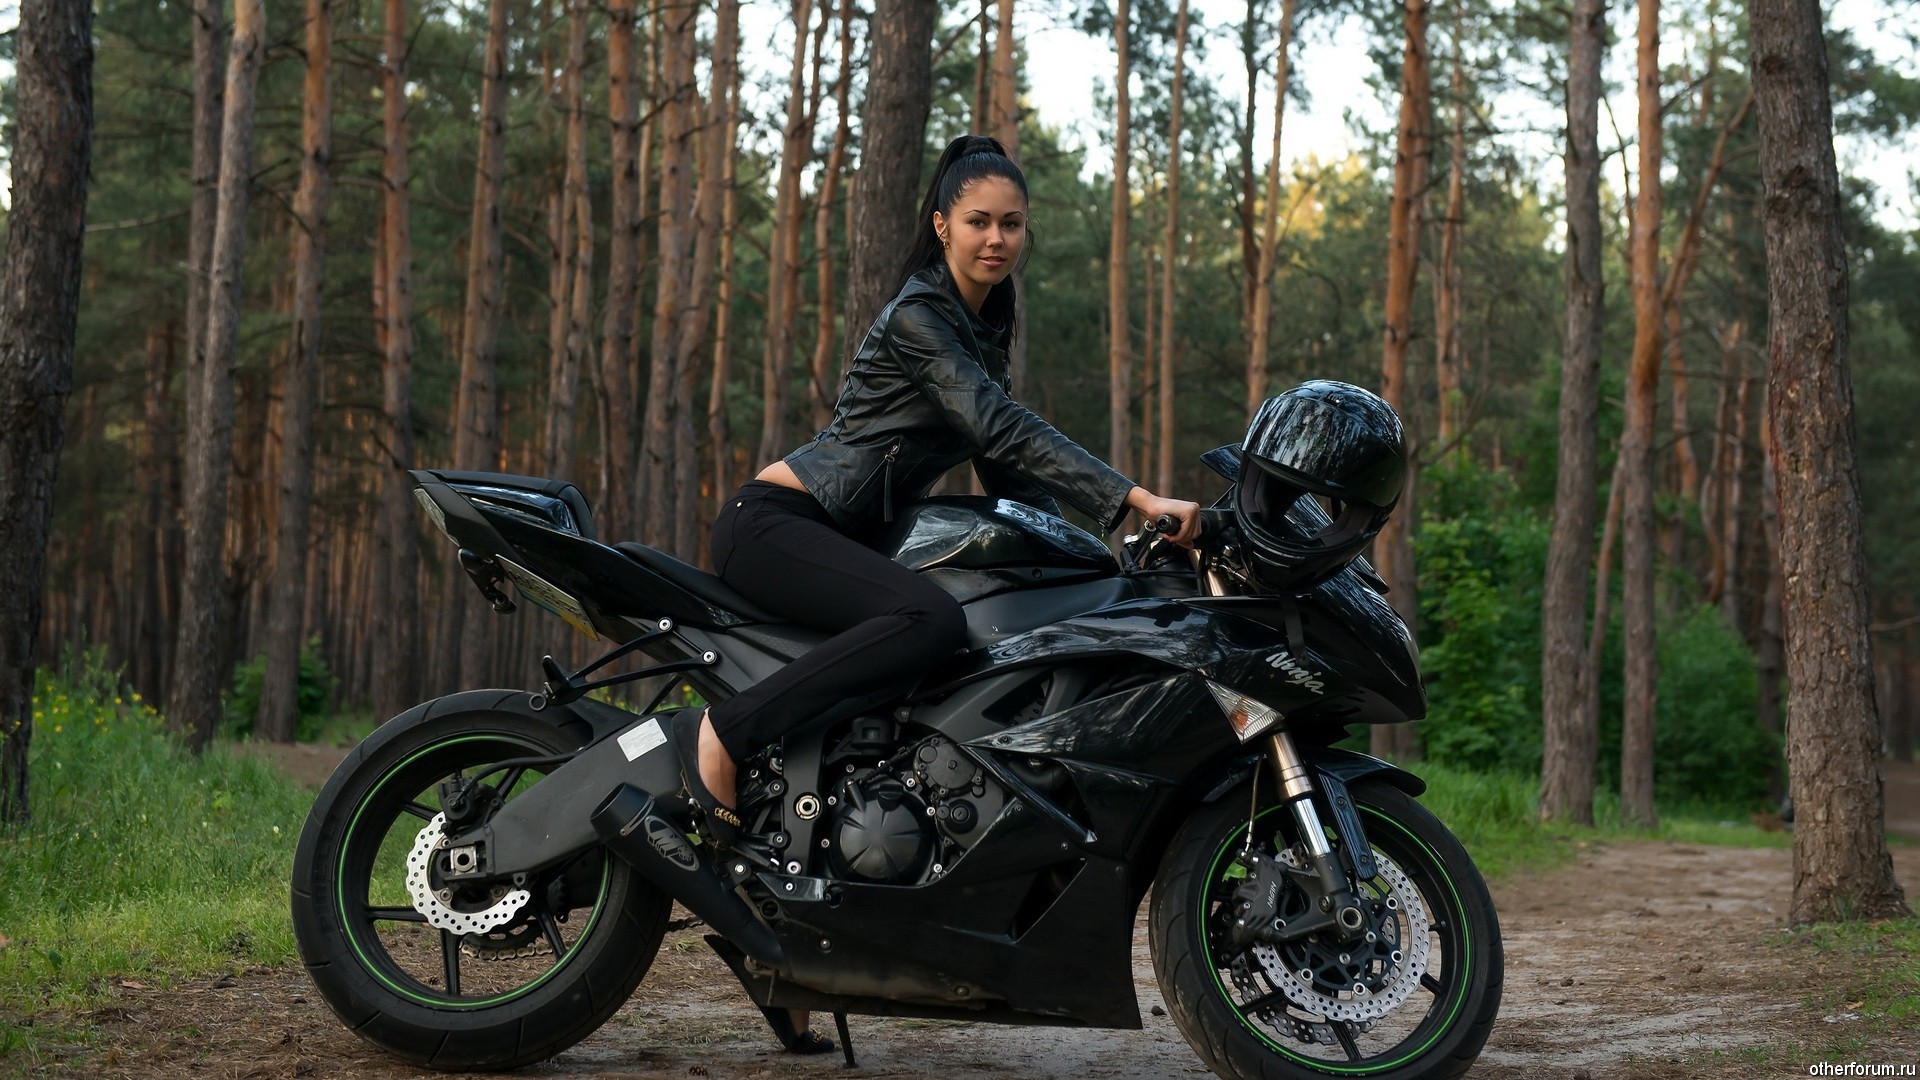 1920x1080 Motocycles Motorcycles and girls Women Kawasaki Ninja motorcycle 